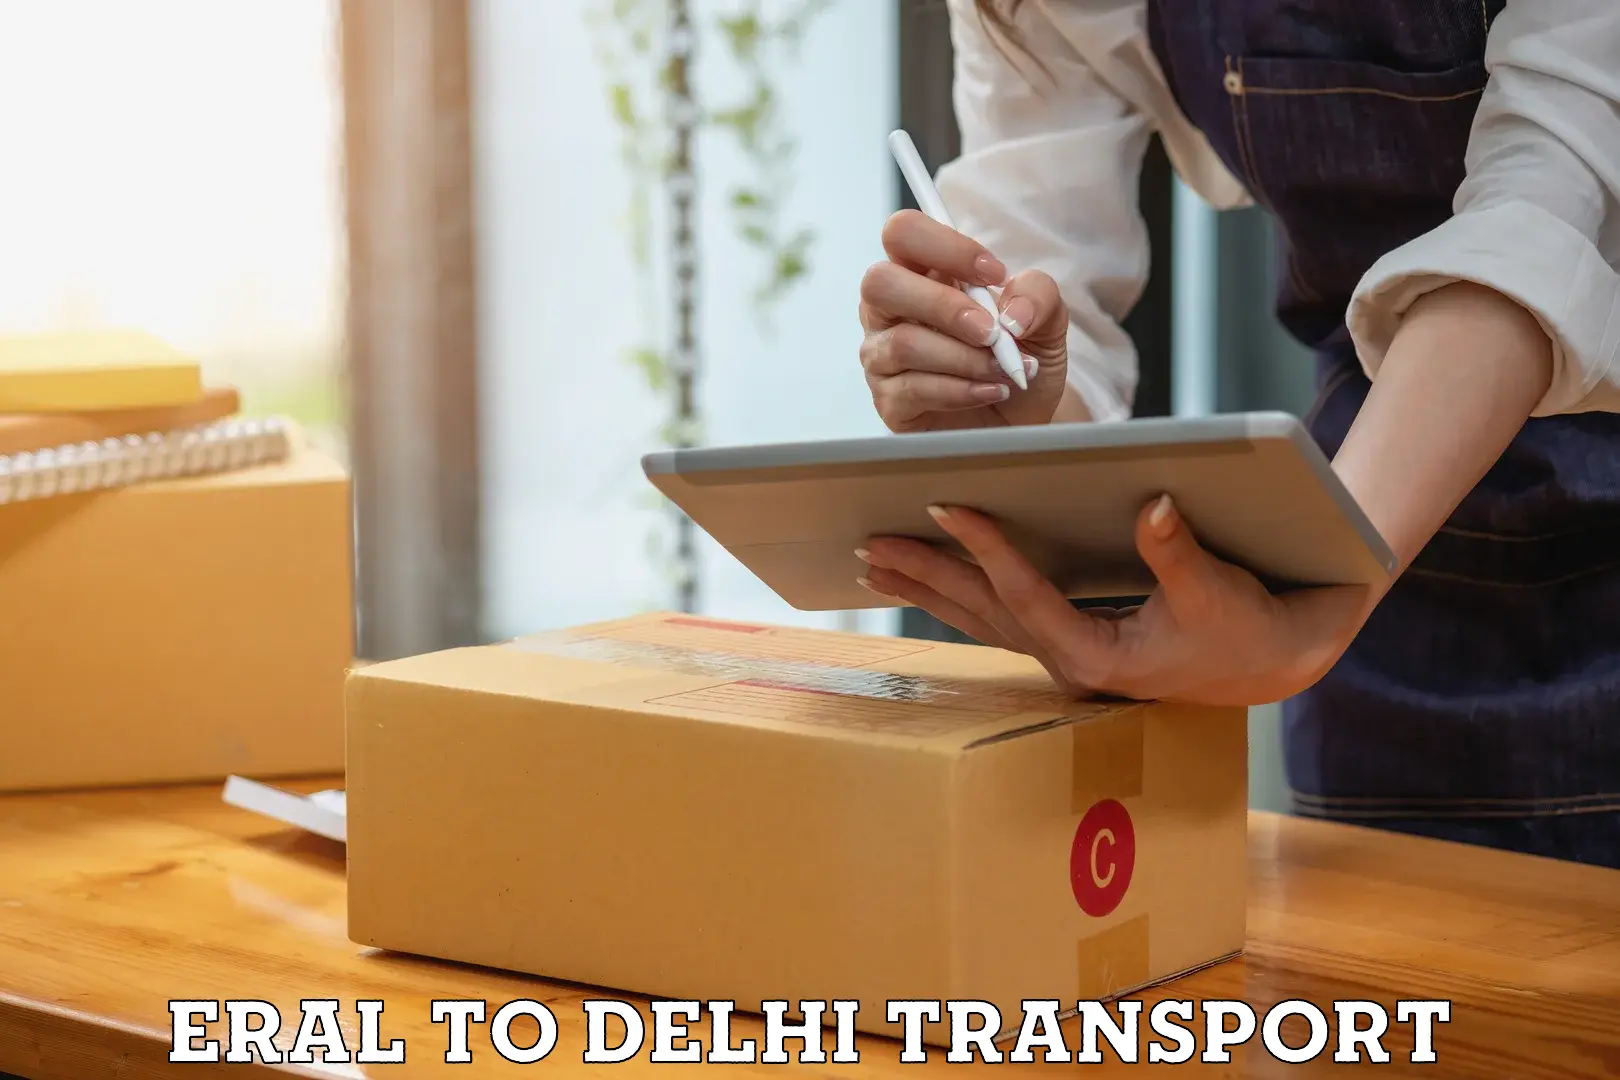 Bike transport service Eral to Delhi Technological University DTU